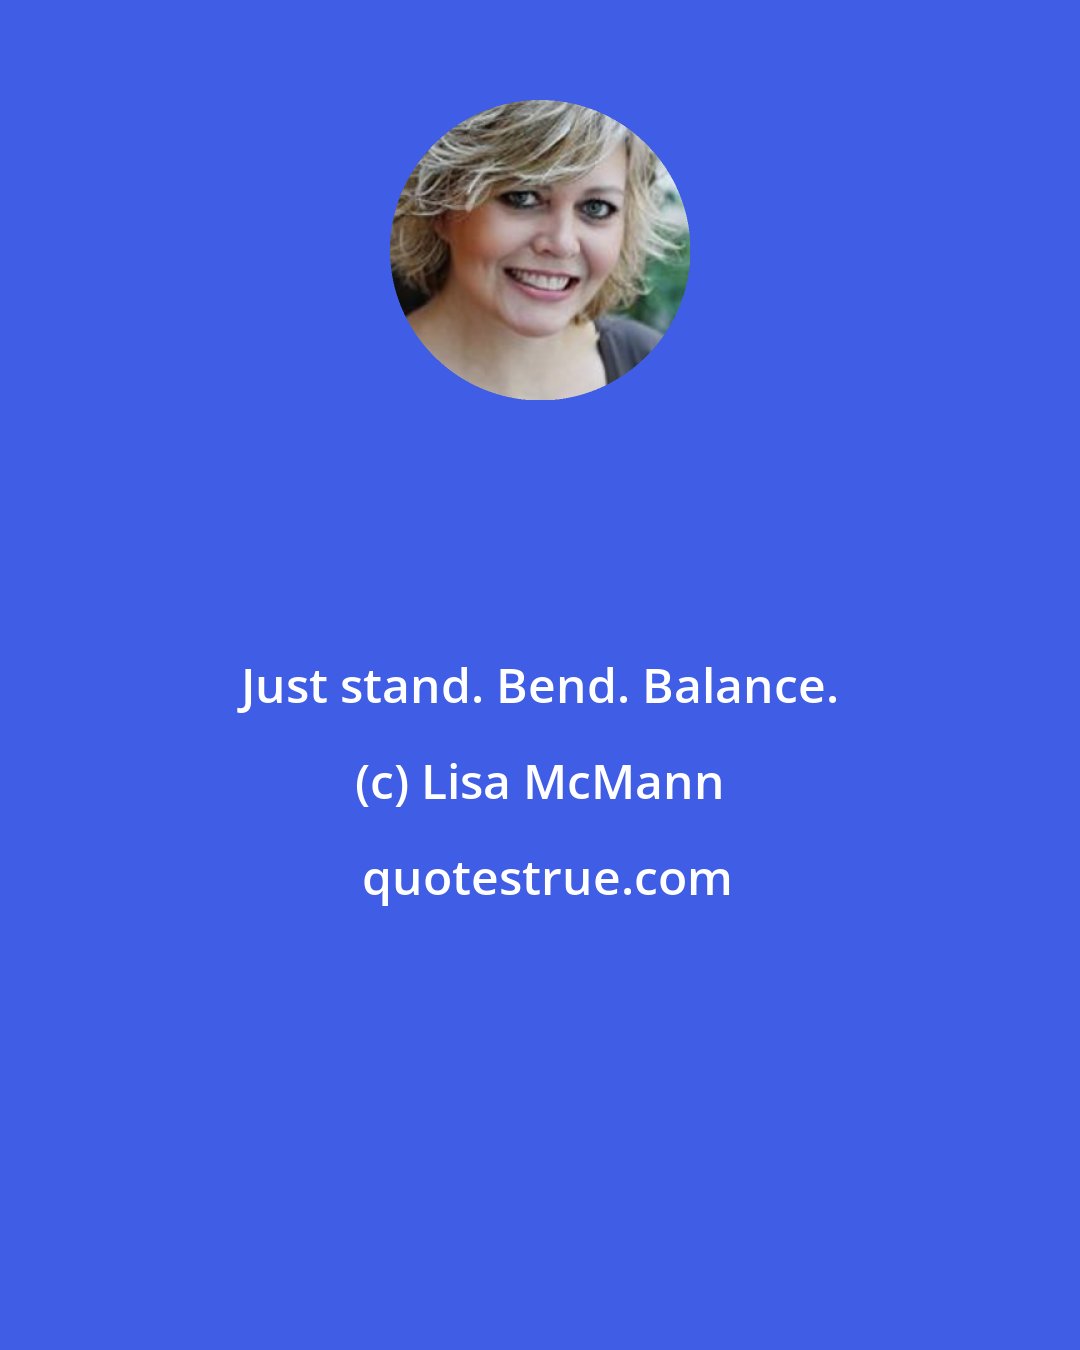 Lisa McMann: Just stand. Bend. Balance.